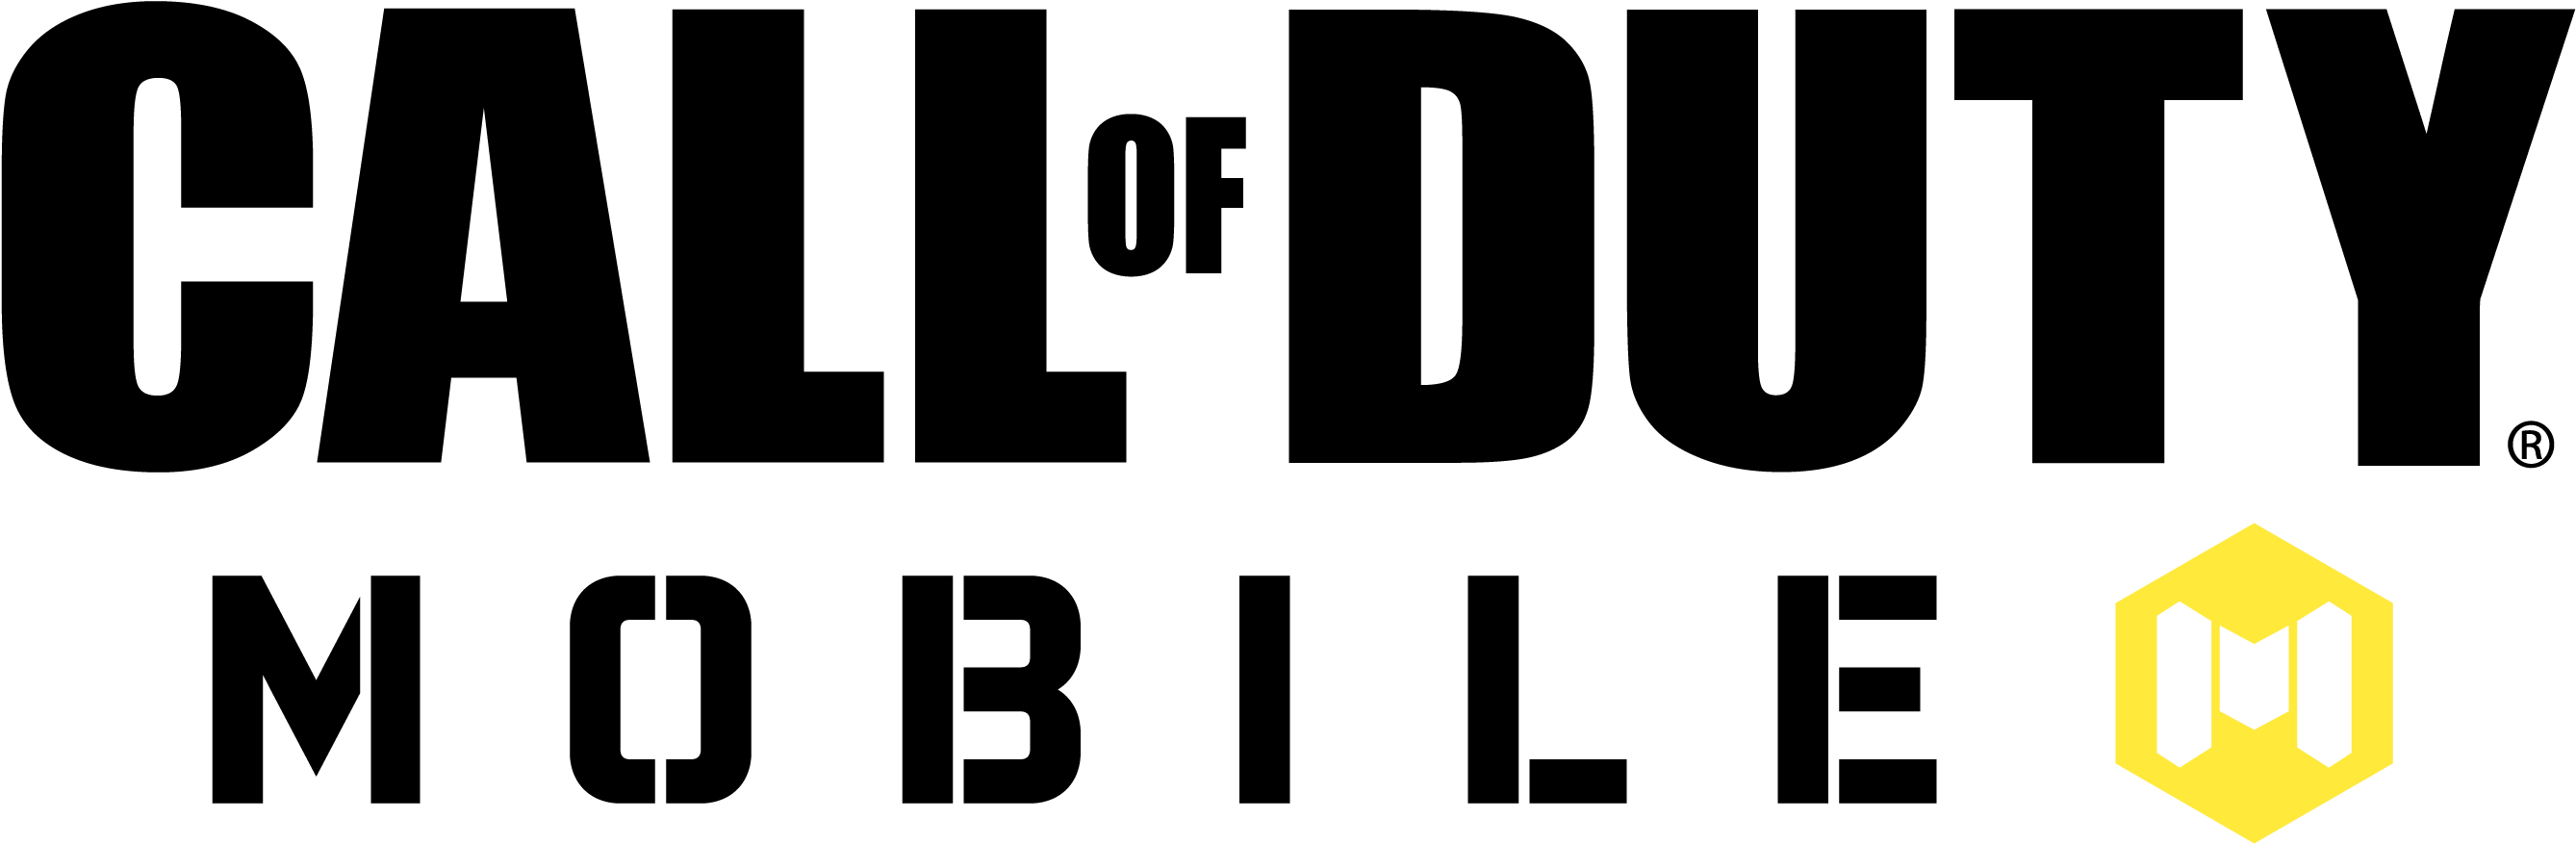 Callof Duty Mobile Logo PNG